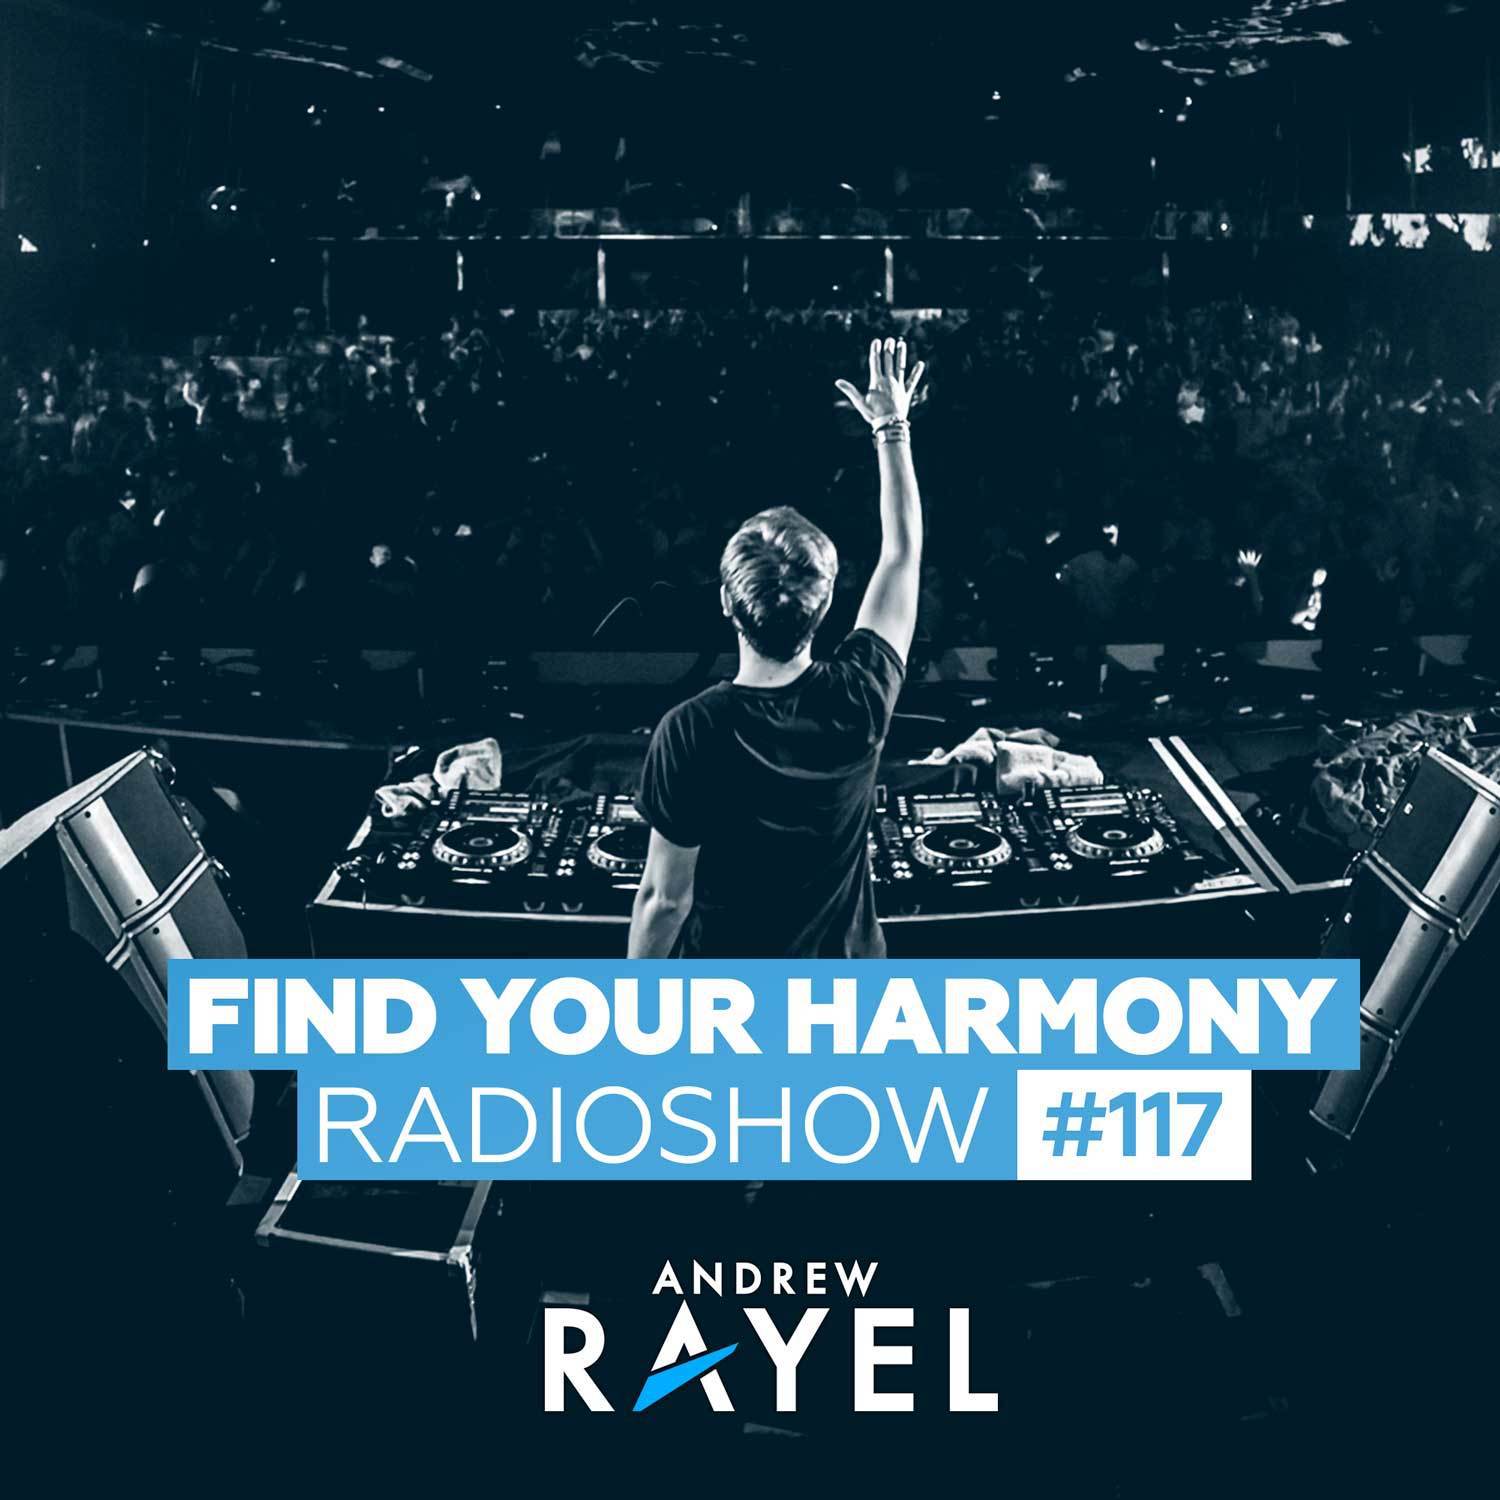 Find Your Harmony Radioshow #117专辑